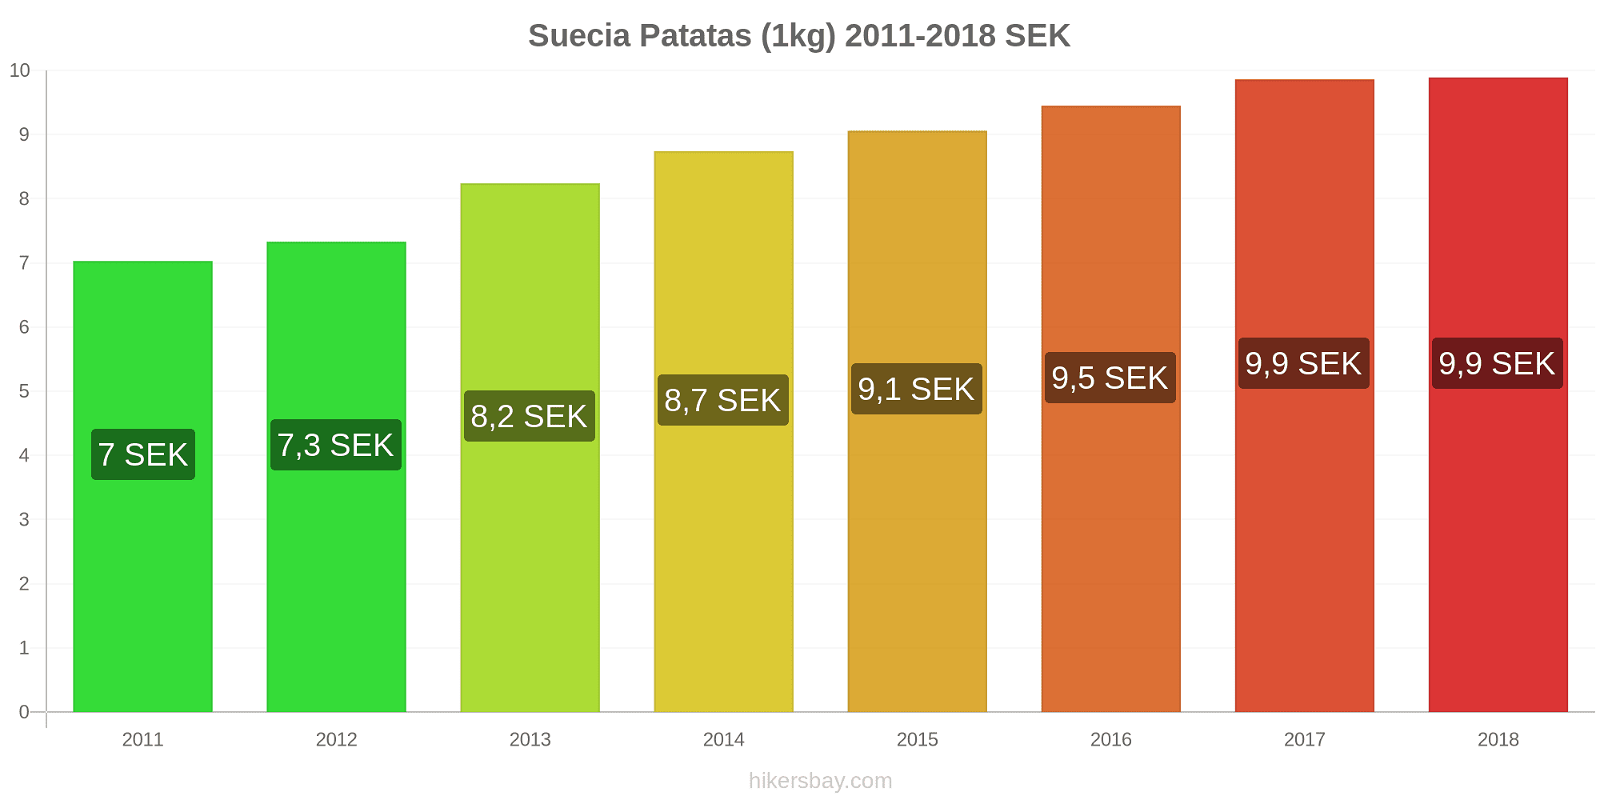 Suecia cambios de precios Patatas (1kg) hikersbay.com